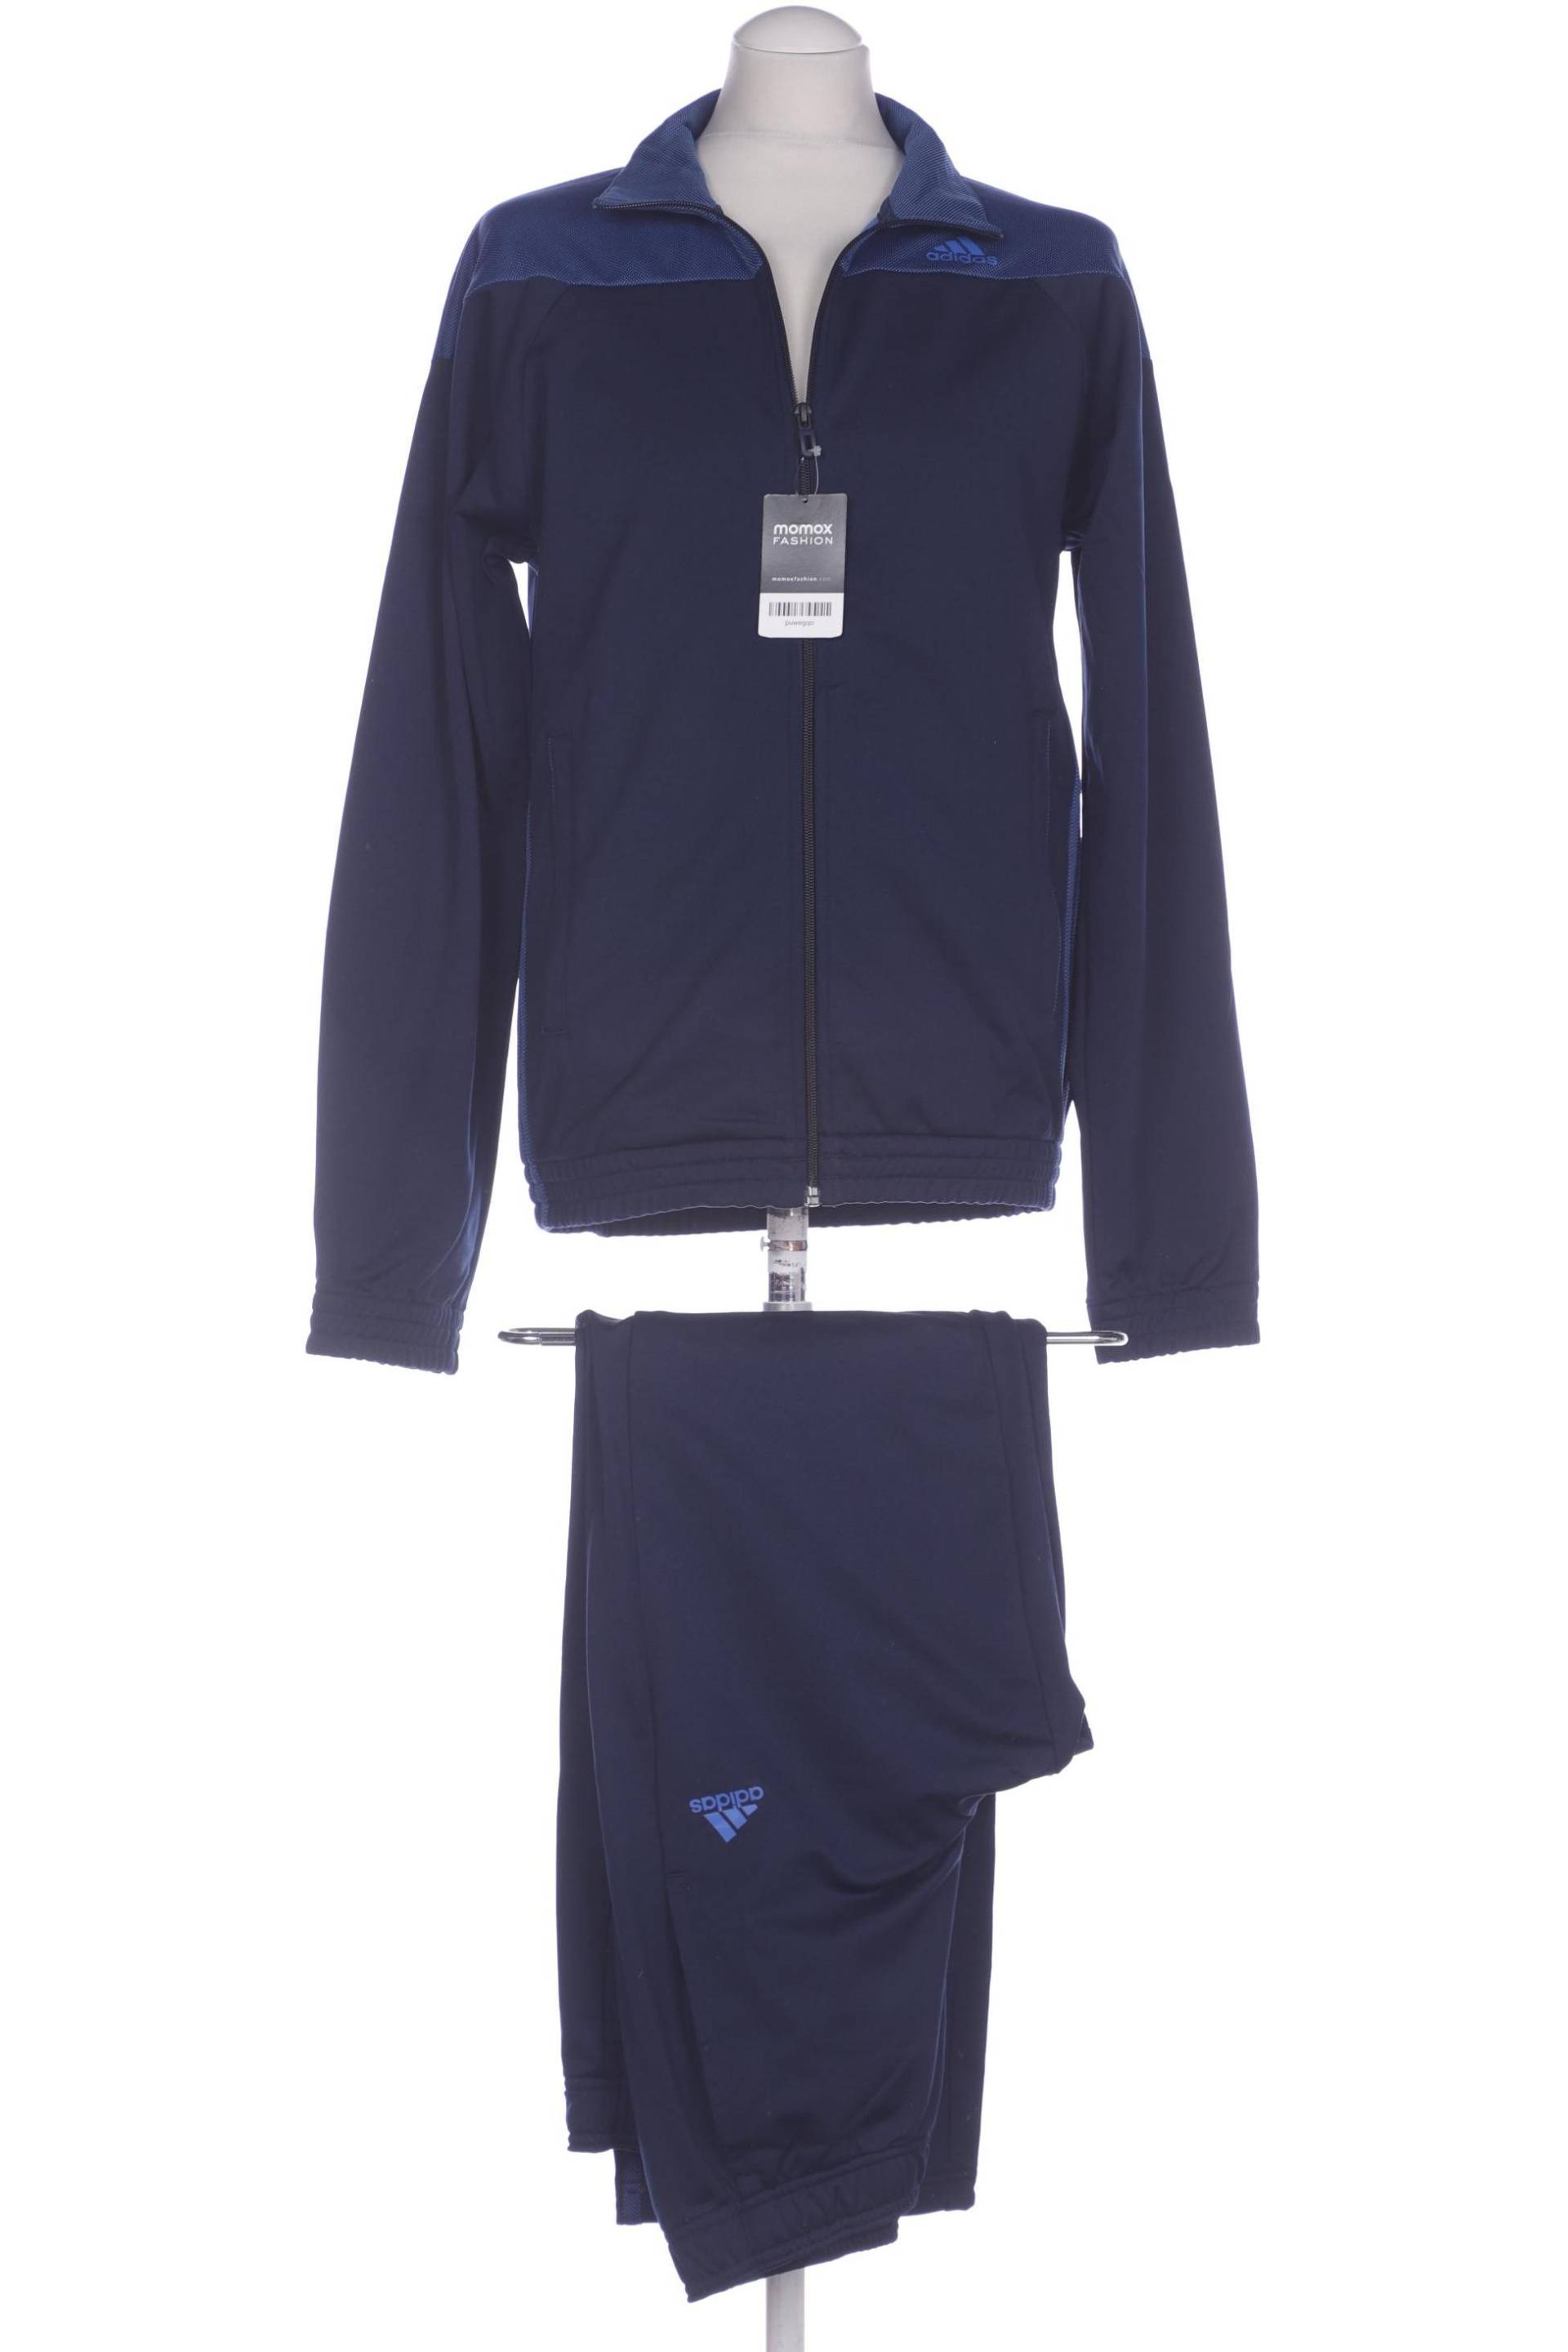 adidas Herren Anzug, marineblau, Gr. 46 von Adidas